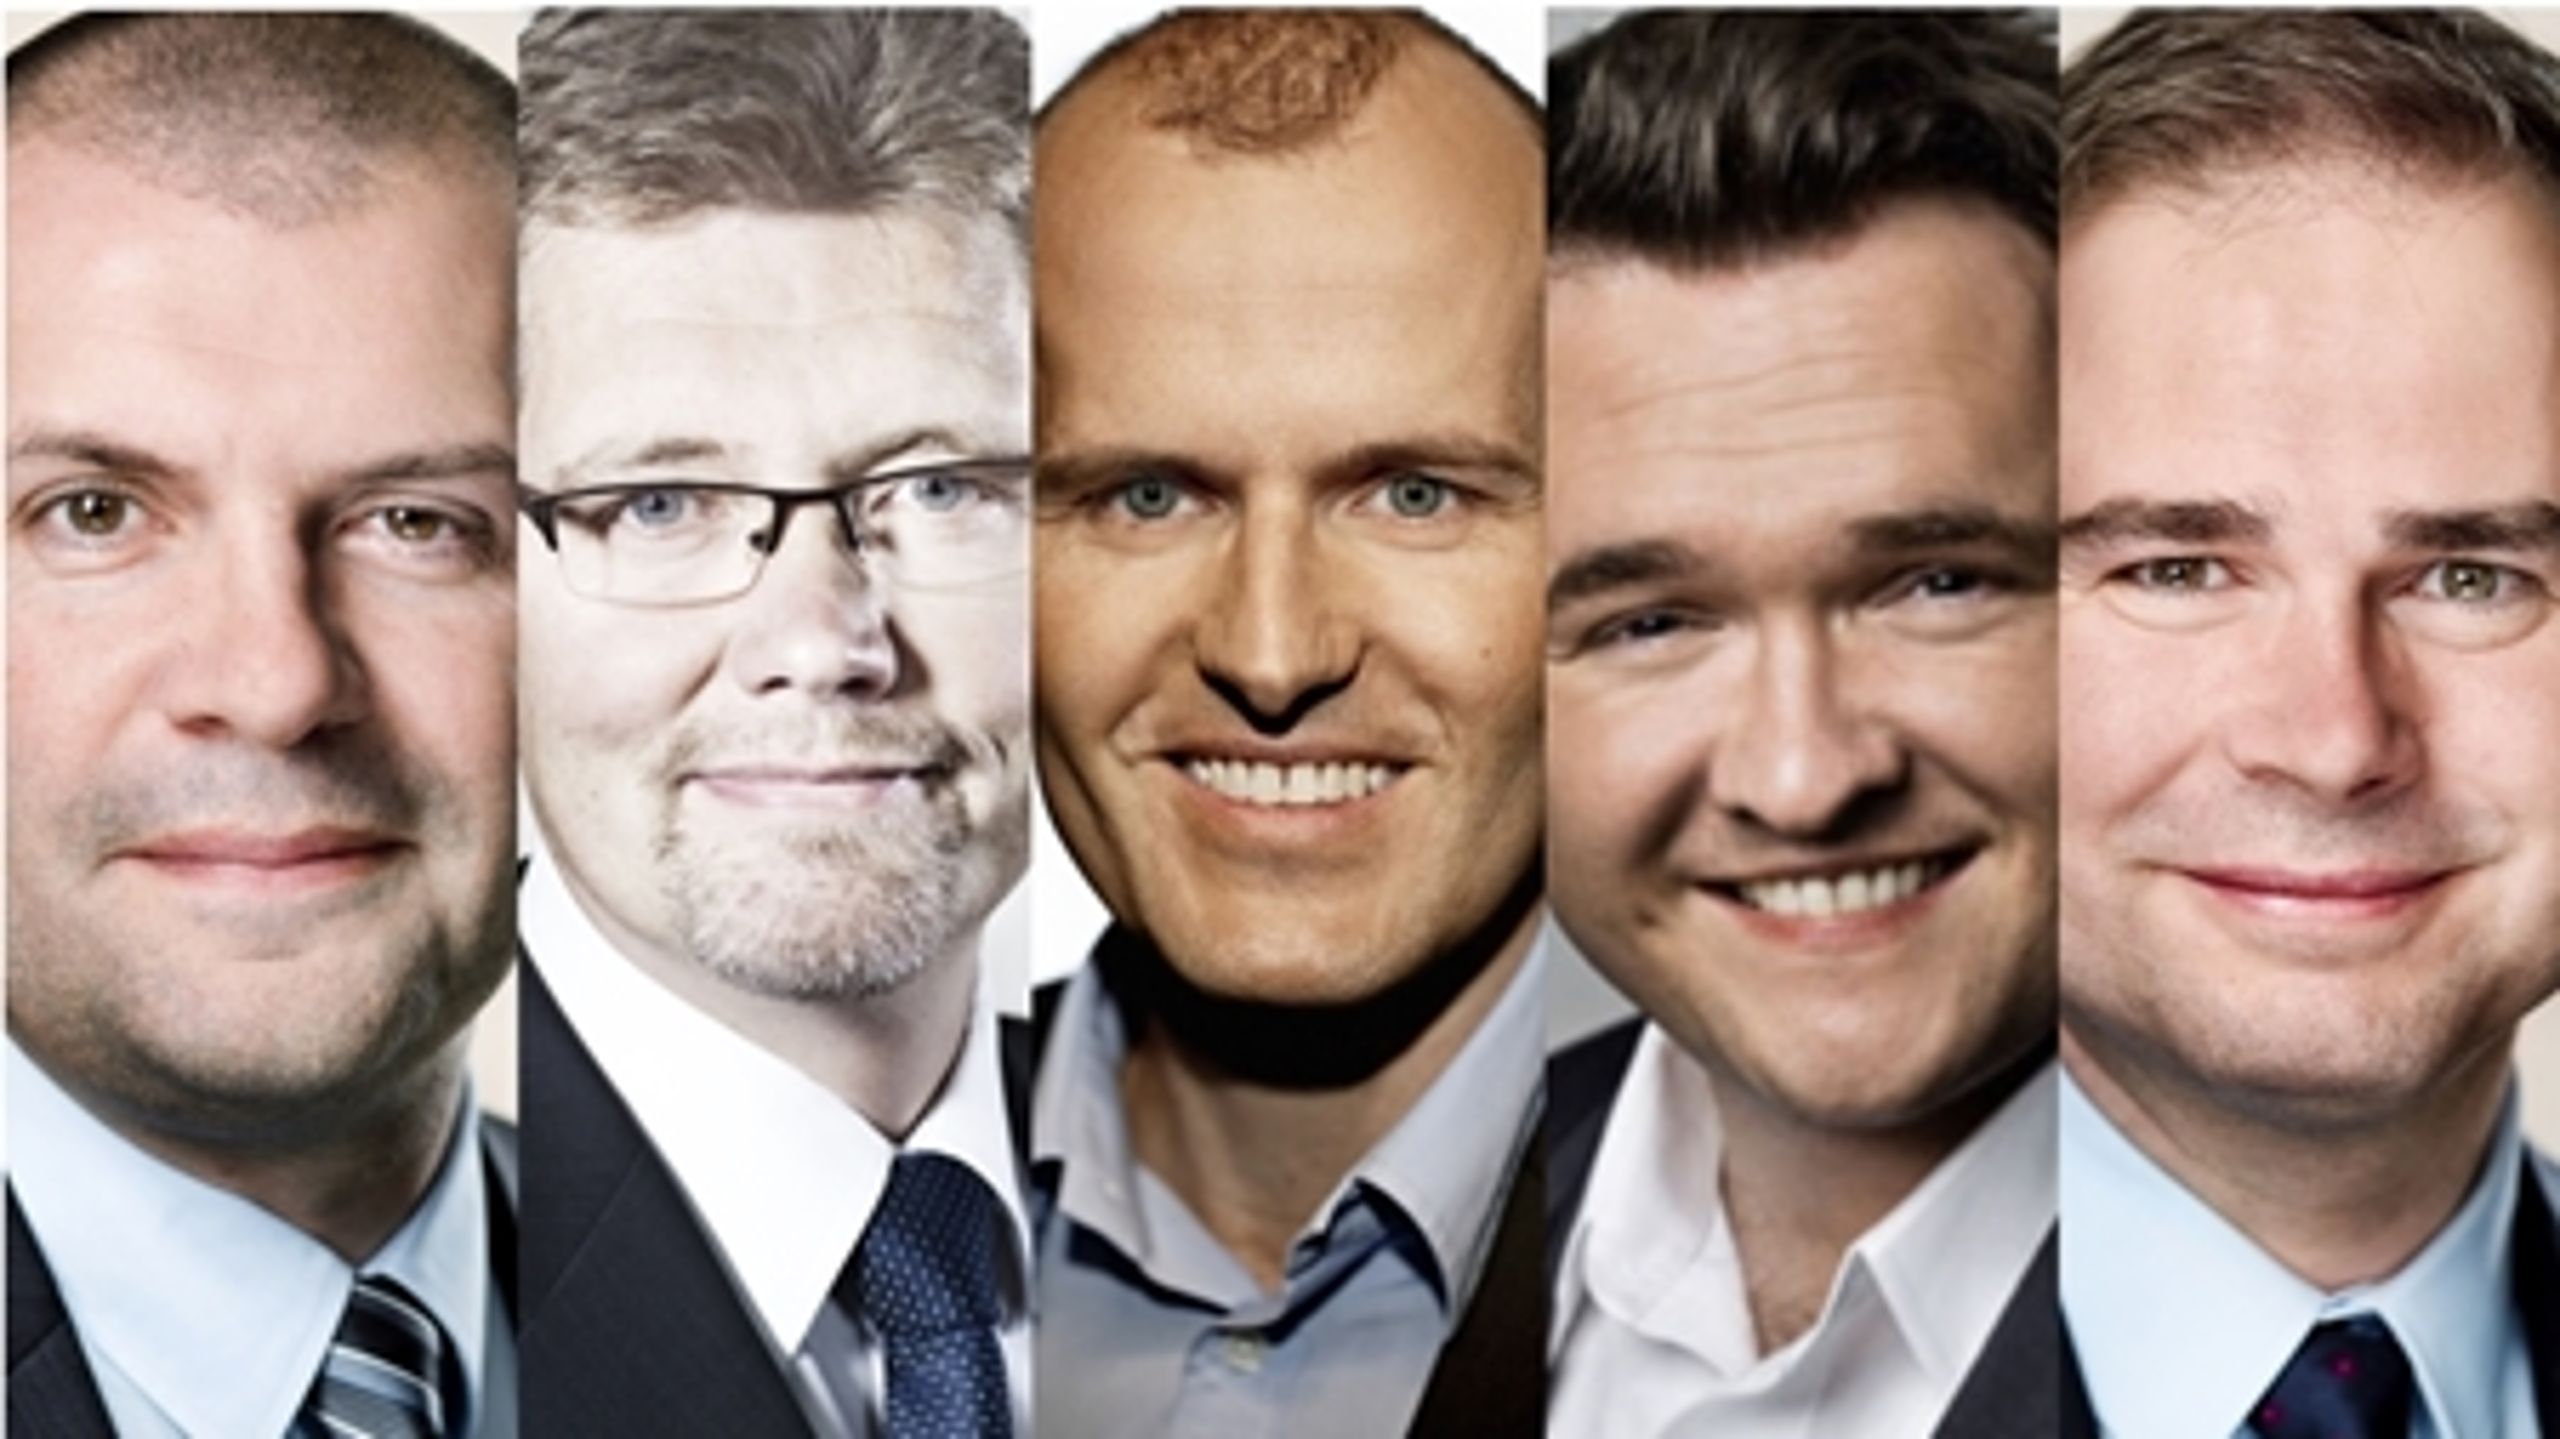 BAGGRUND. De tre officielle socialdemokratiske kaffeklubber er langt fra det eneste netværk i det store regeringsparti. Aarhus og Svend Auken er blandt de elementer, der binder fem centralt placerede socialdemokrater sammen.